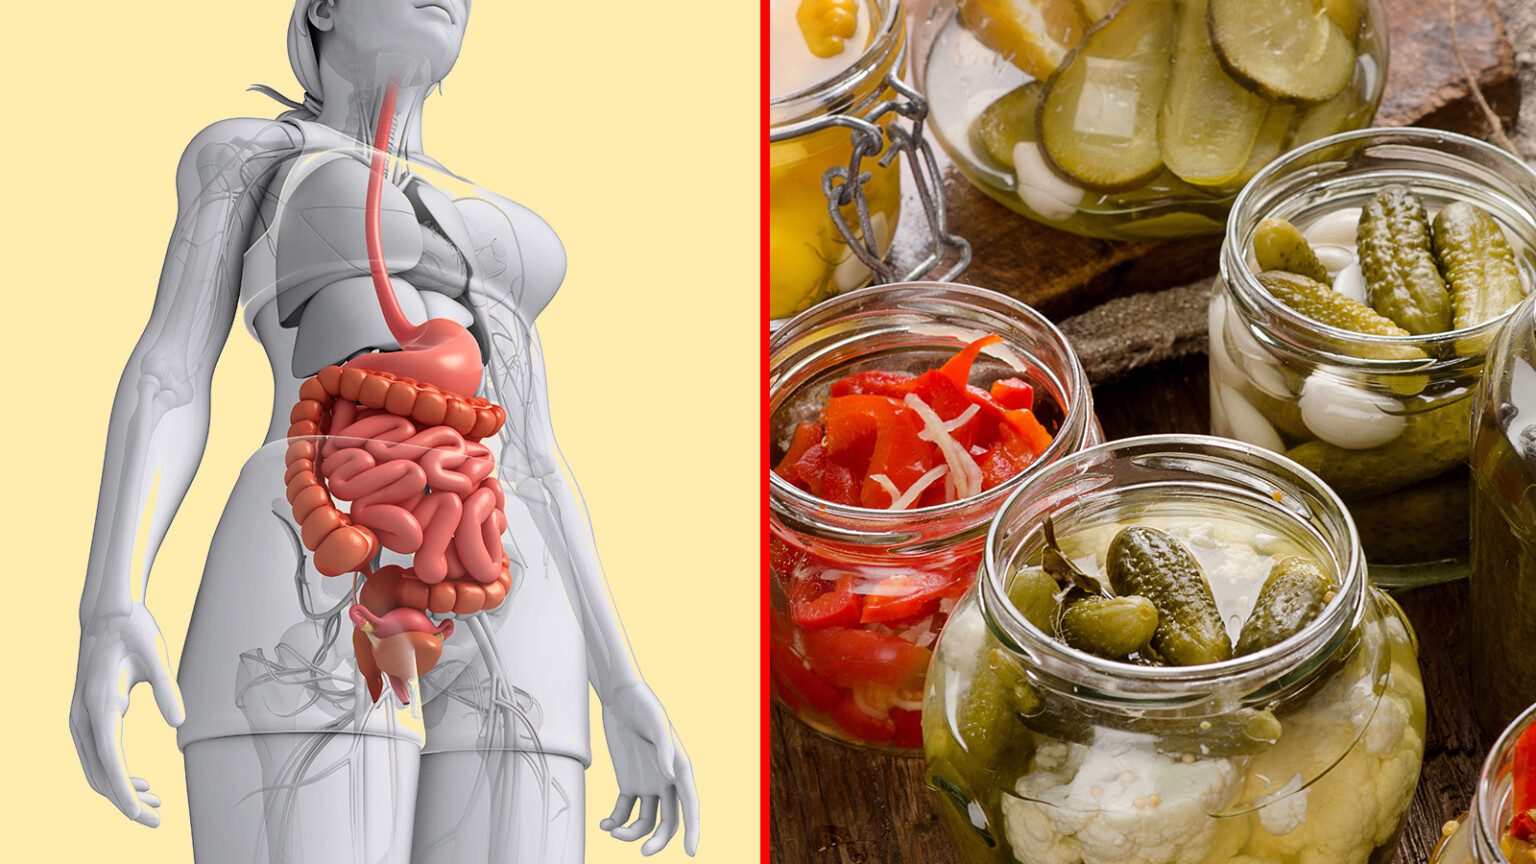 salud intestinal, probióticos, prebióticos, fermentados, lactobacilos, bacterias, parásitos, fibra, estrés, obesidad